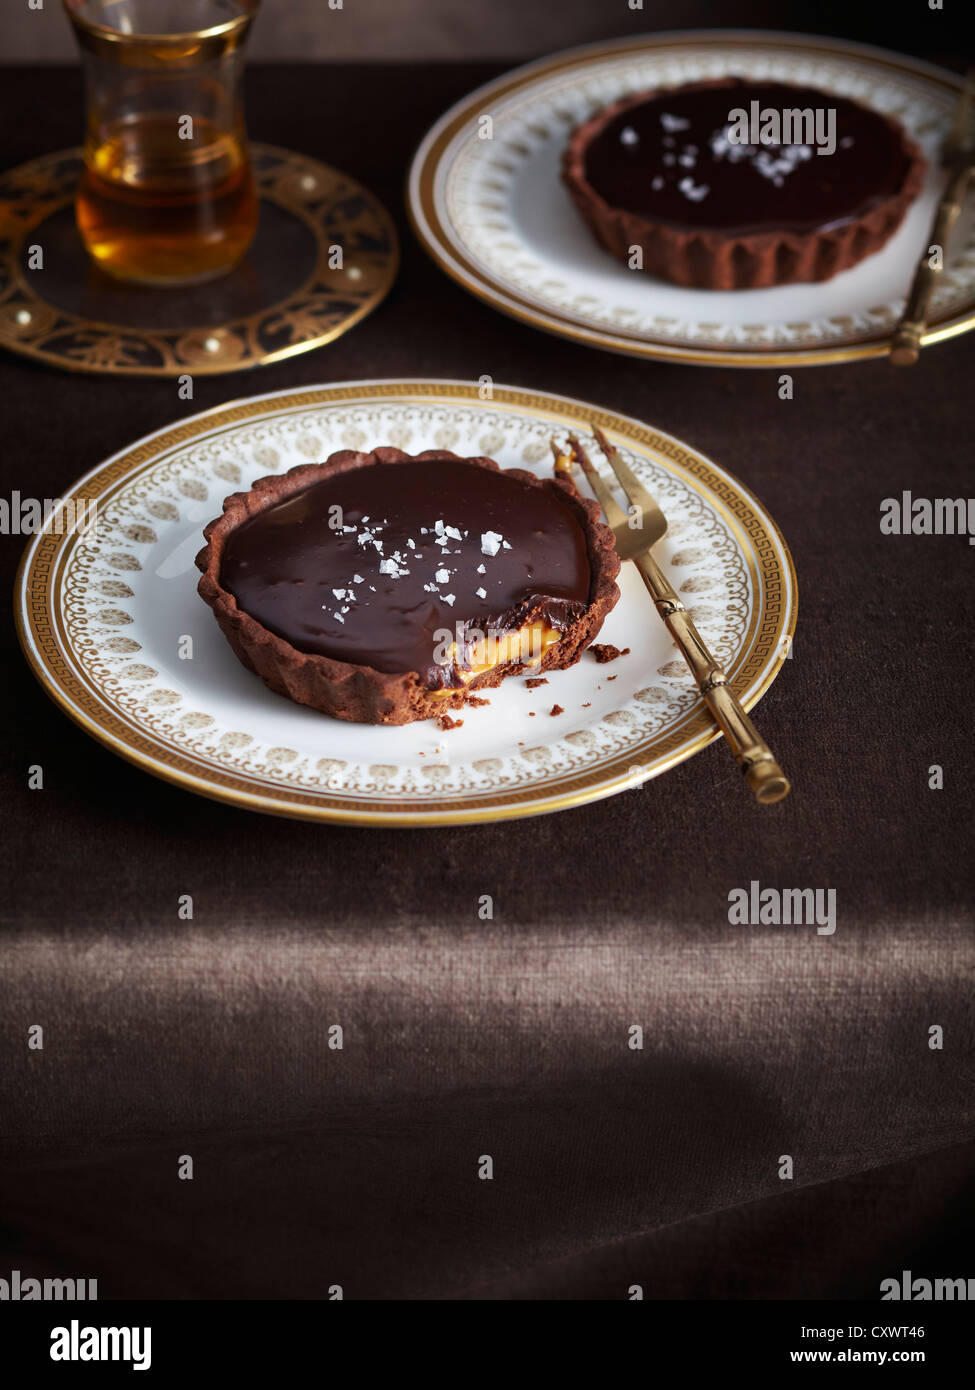 Assiette de tarte chocolat caramel salé Banque D'Images